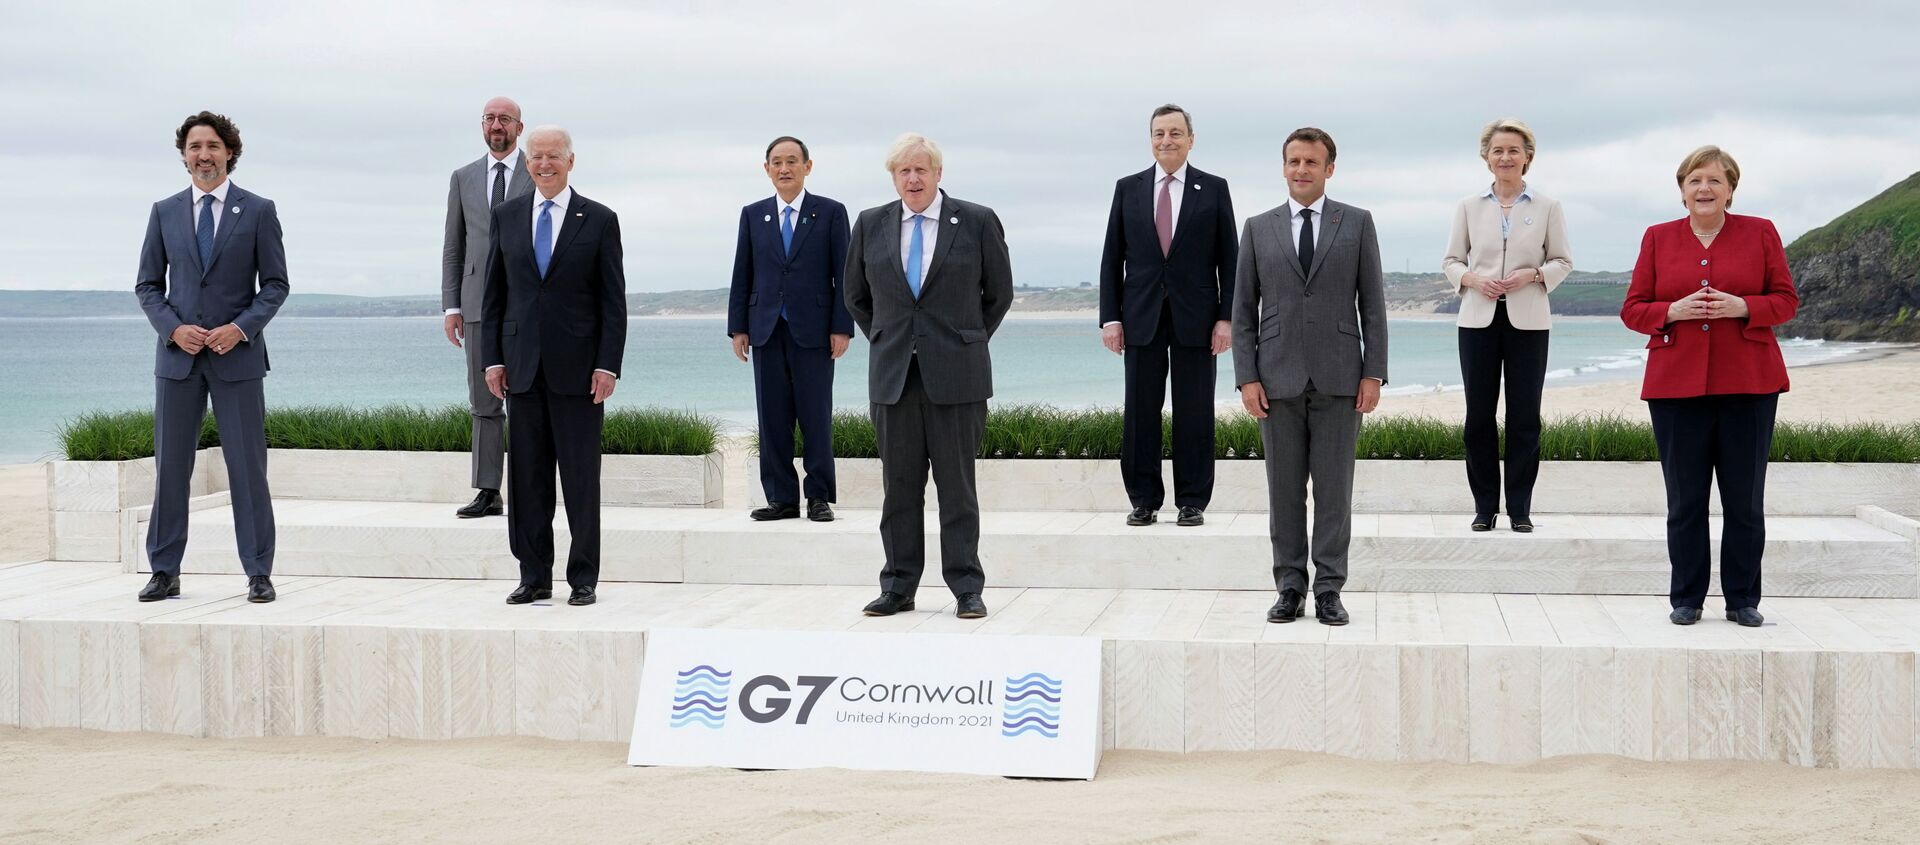 Саммит G7 в Великобритании в Карбис-Бэй, Великобритания. Архивное фото - Sputnik Кыргызстан, 1920, 17.06.2021